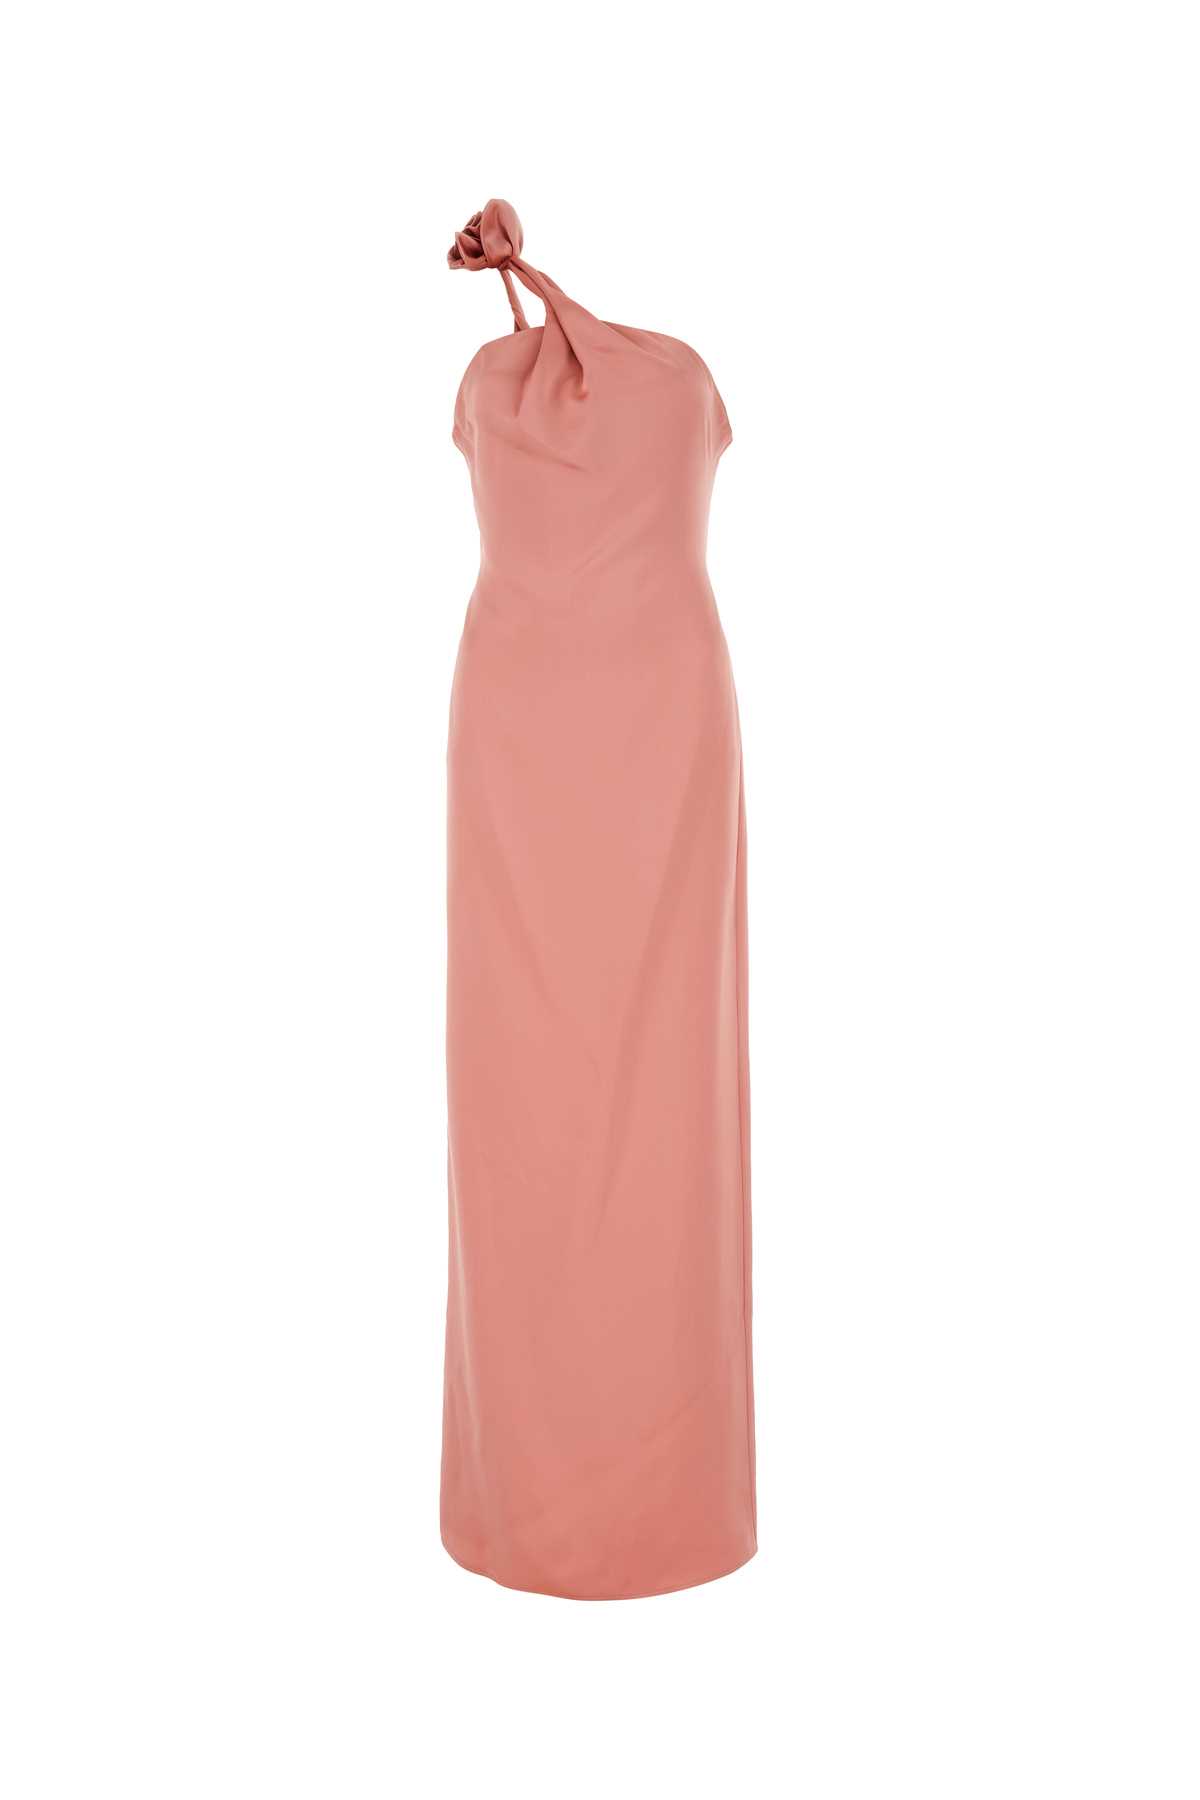 Pink Silk Dress